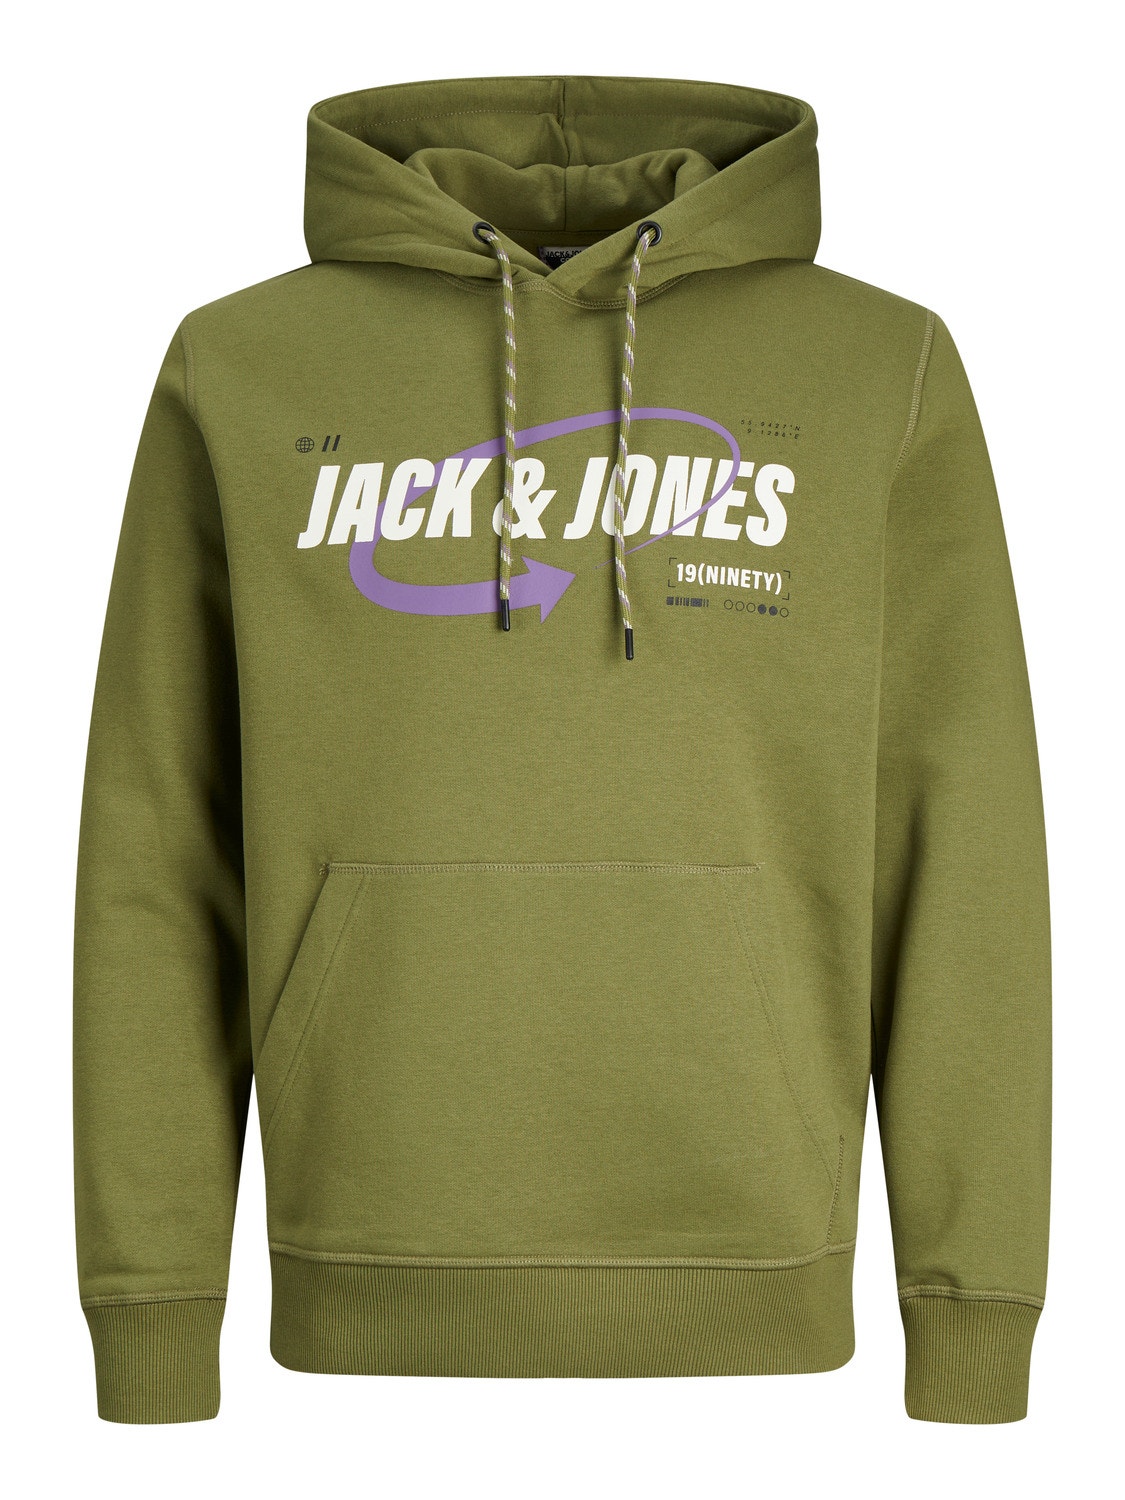 Jack & Jones Logo Hettegenser -Olive Branch - 12245714